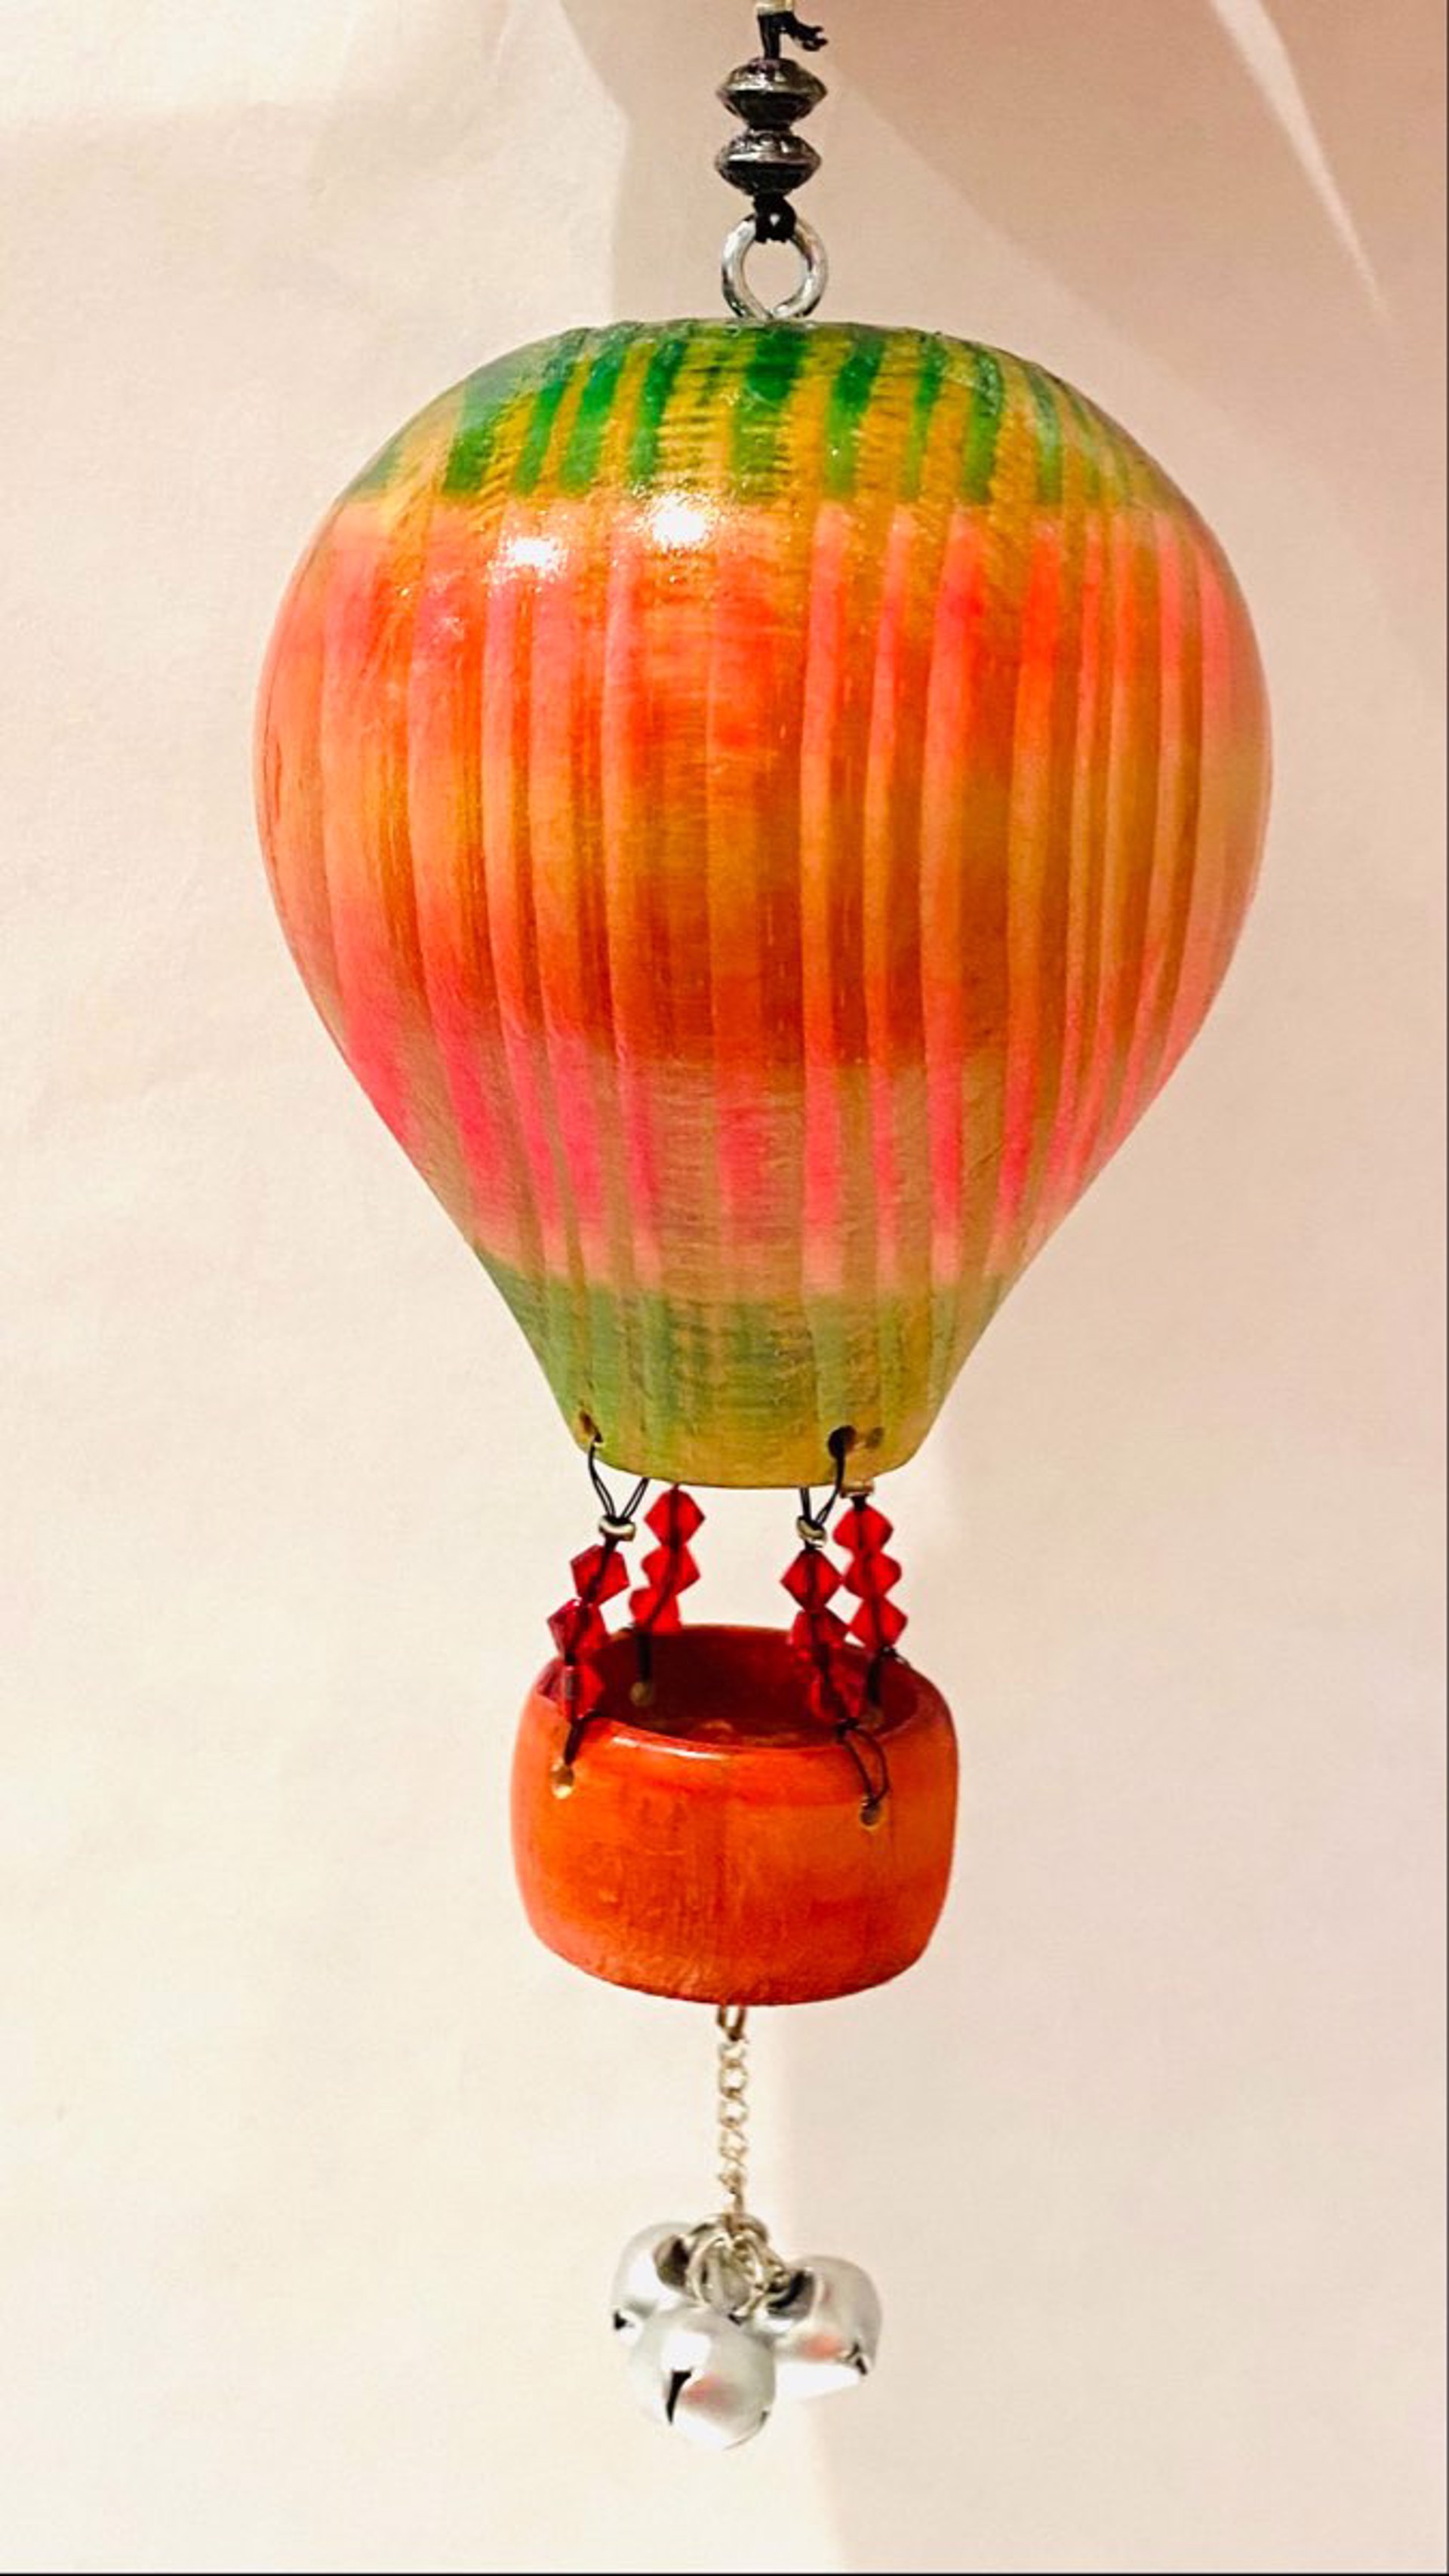 MT22-44 Whimsical Hot Air Balloon Ornament by Marc Tannenbaum